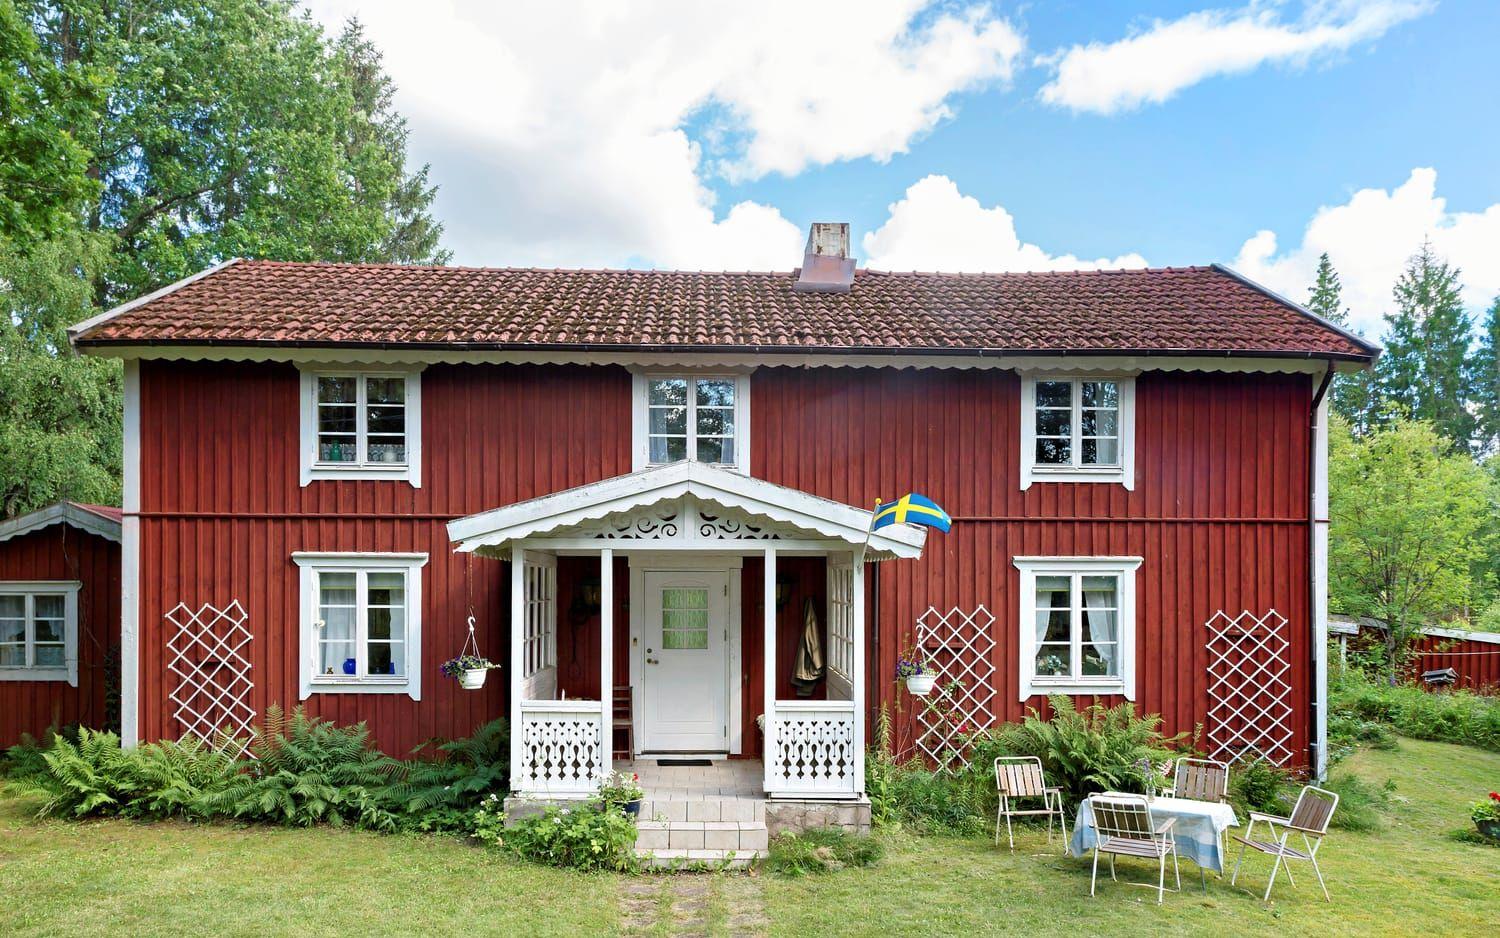 Ett timmerstockhus i Jälluntofta väckte stort intresse med sin historia och landade på slutpriset 1 580 000 kronor. Det röda boningshuset med vita knutar har även nära till en vandringsled, skog och sjöar.